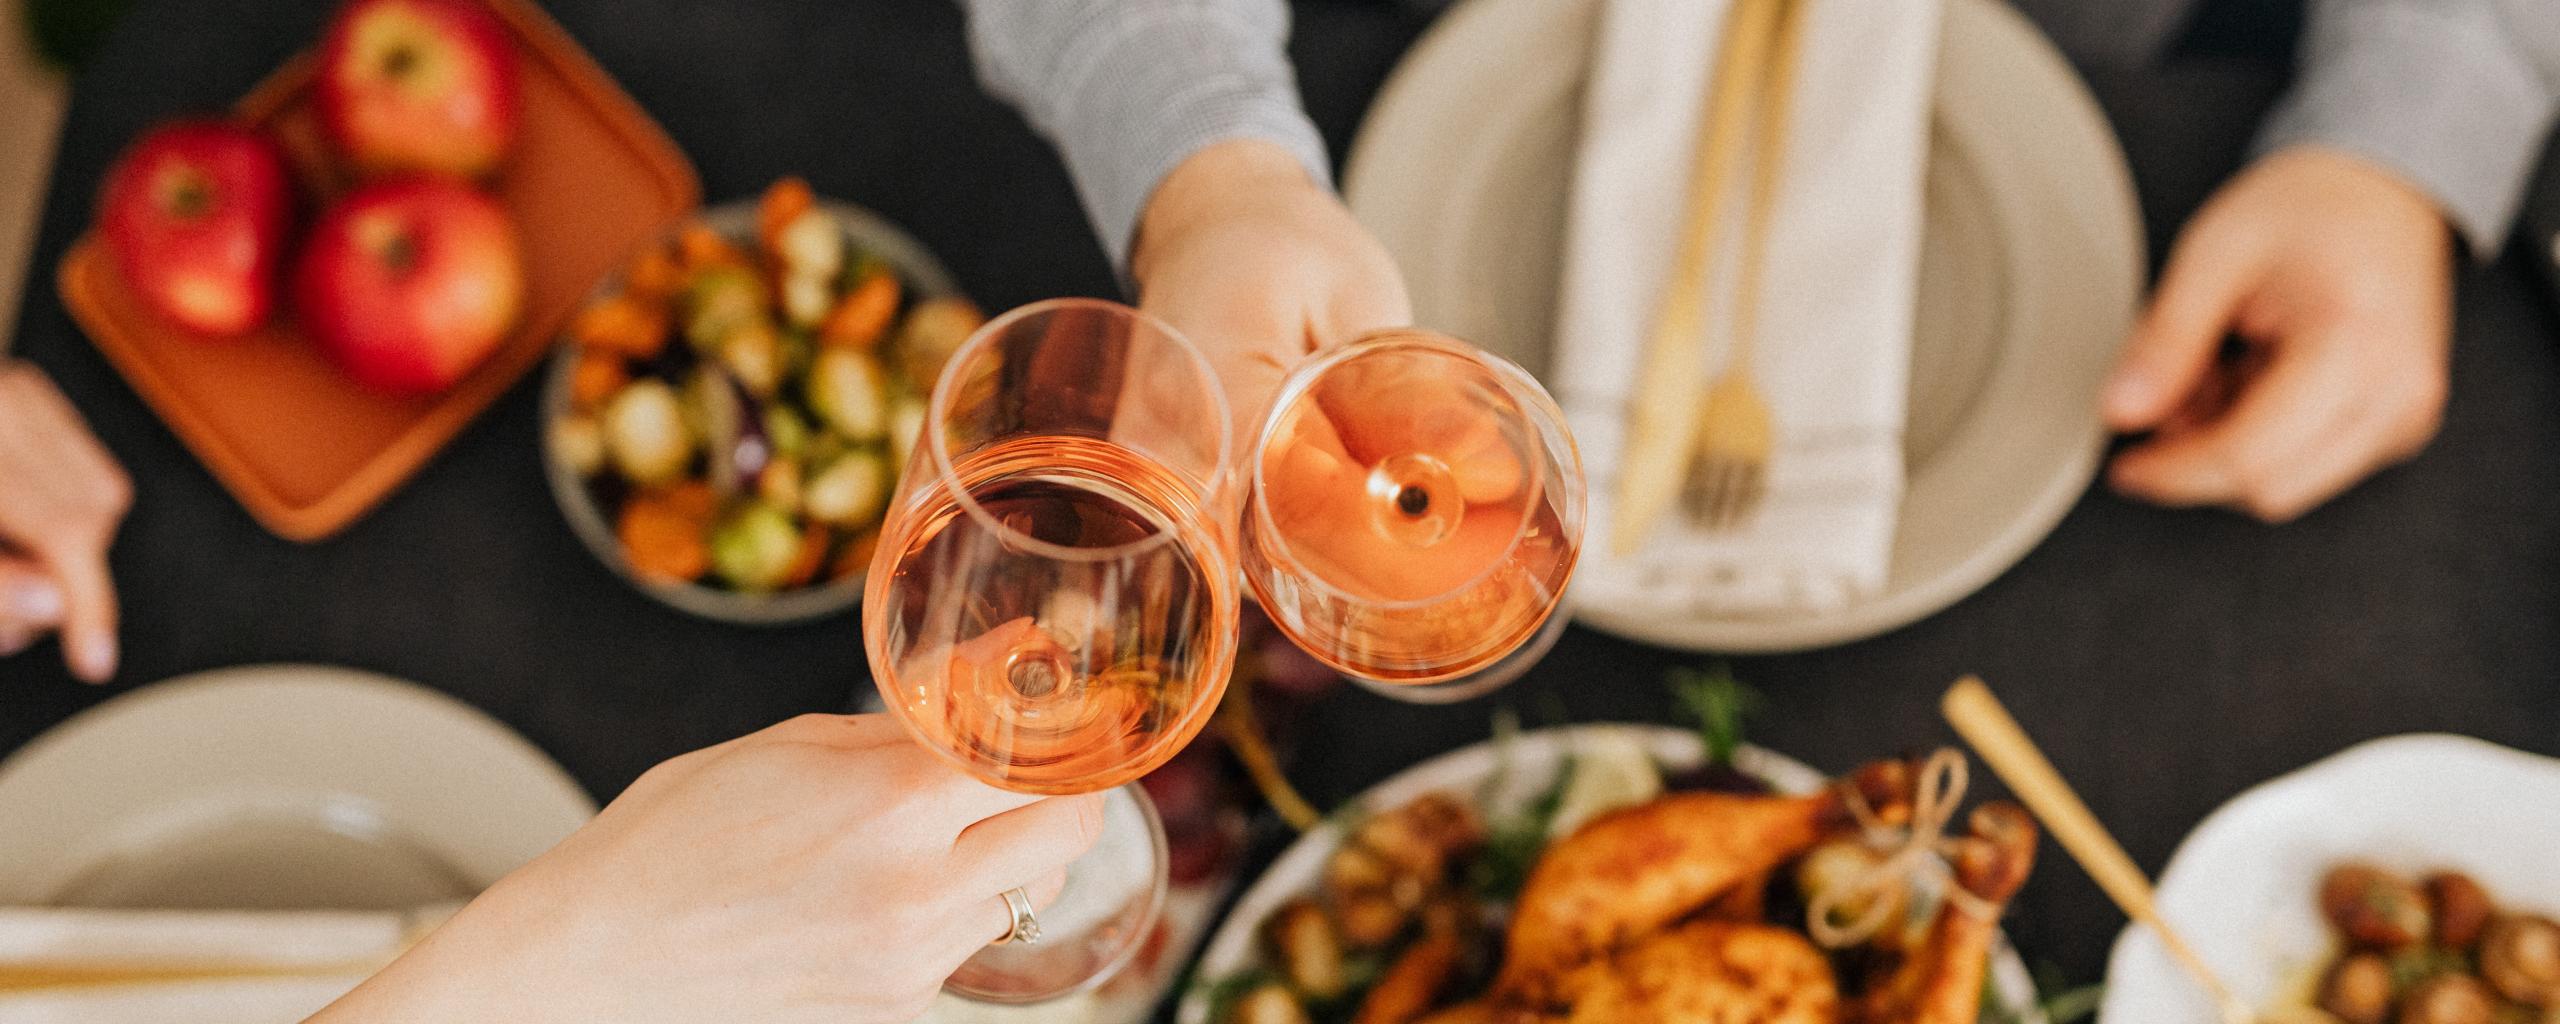 Het bovenaanzicht van een tafel vol met eten. We zien twee handen die twee wijnglazen vasthouden en met elkaar proosten.